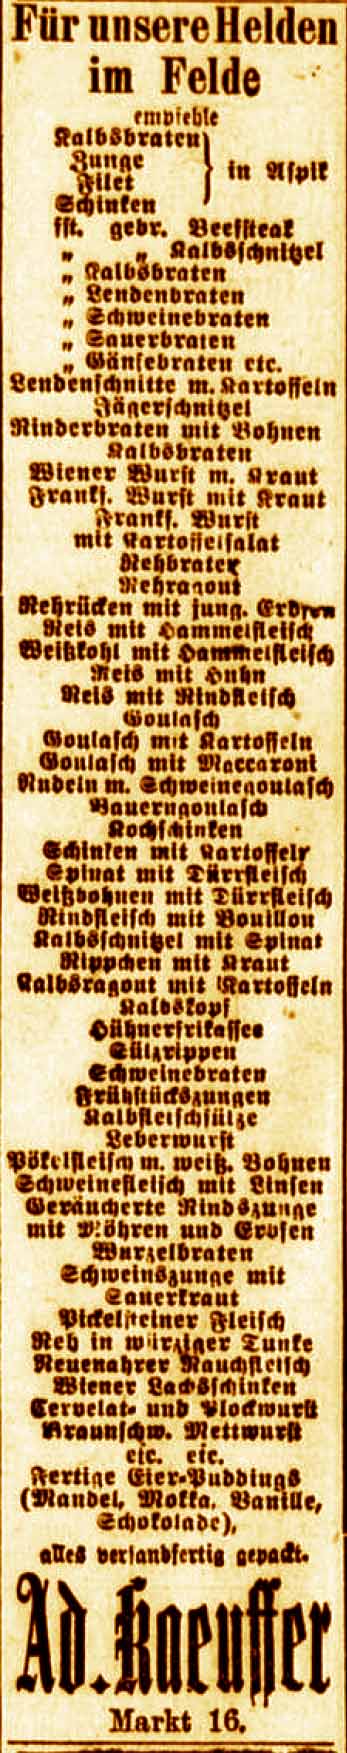 Anzeige im General-Anzeiger vom 5. Januar 1916